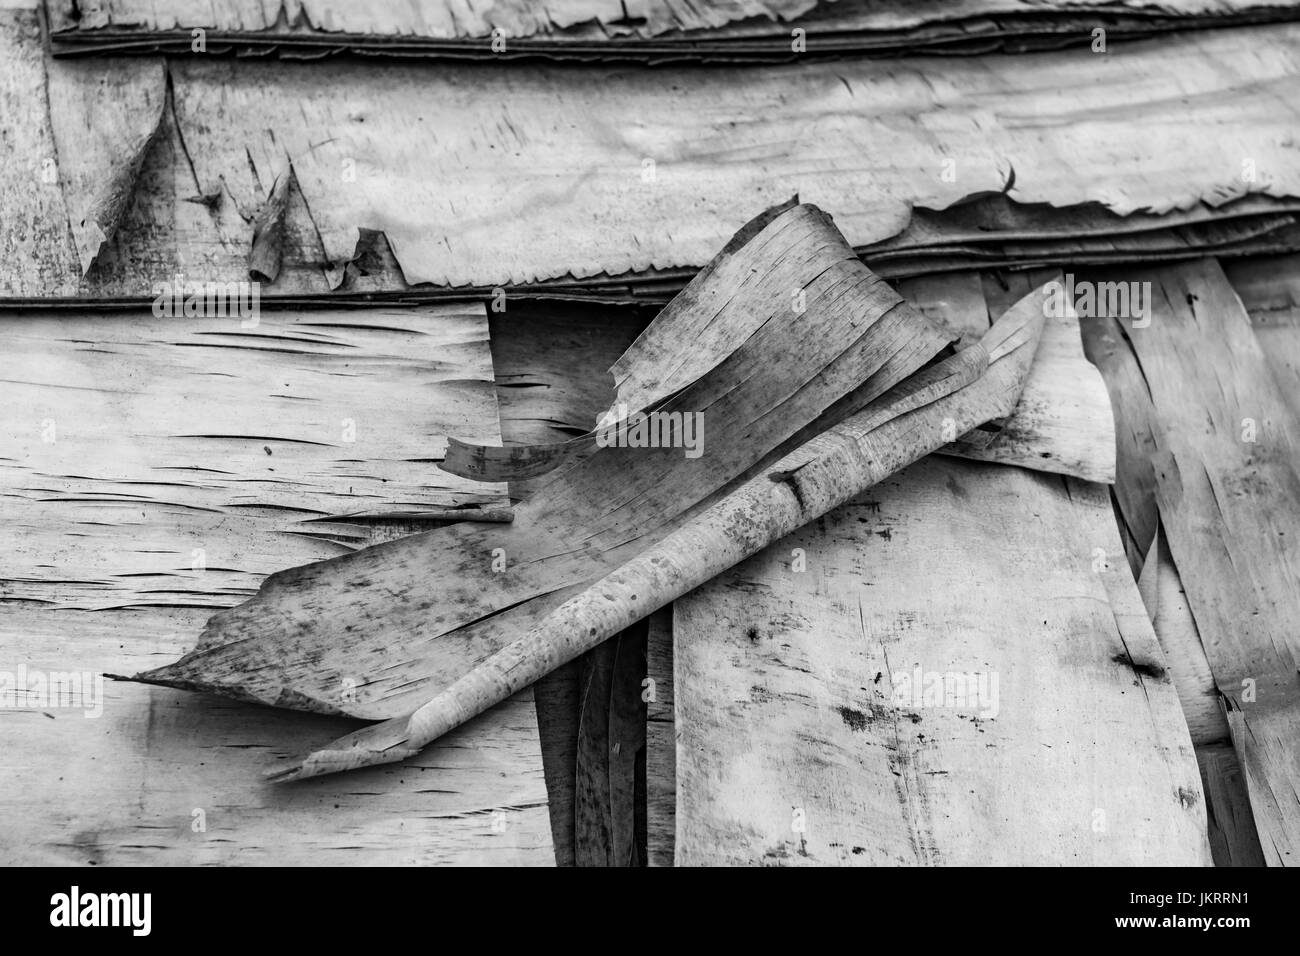 Immagine in bianco e nero di vecchi strati di compensato sfaldante che si separano. Vecchia struttura di legno. Foto Stock